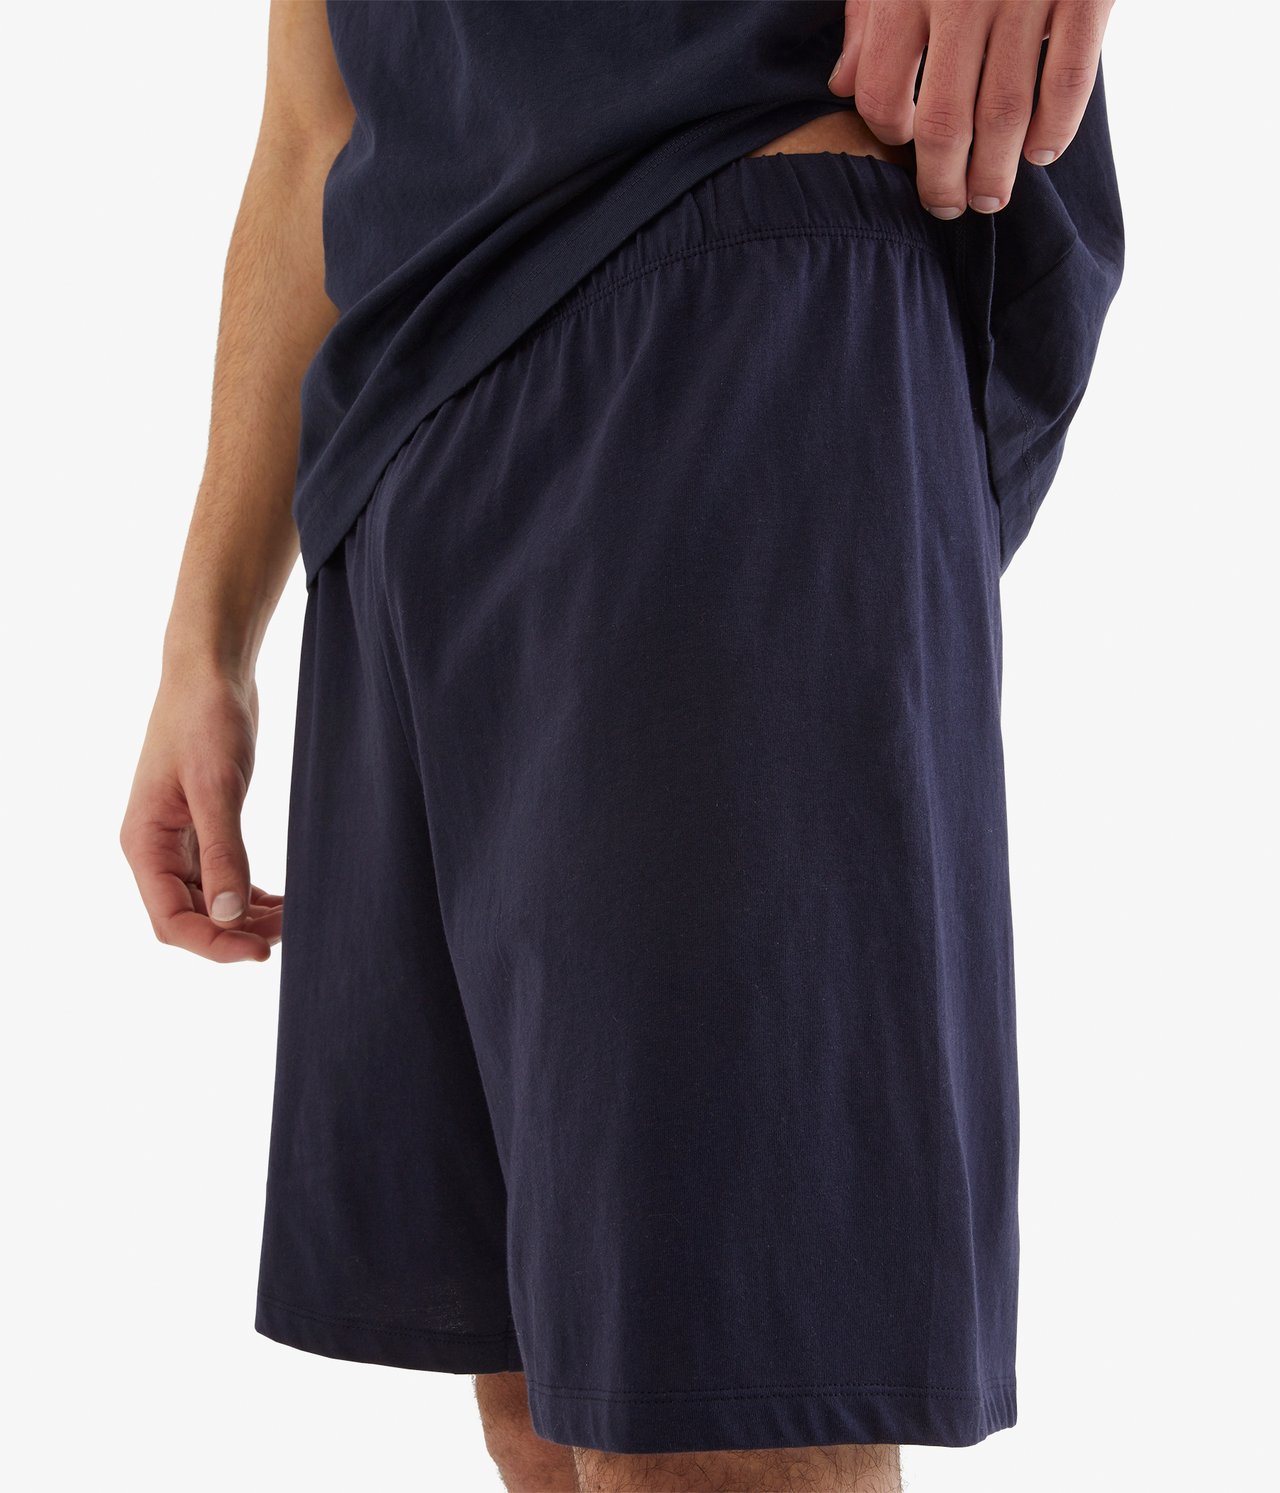 Spodnie od piżamy - Ciemnoniebieski - 3